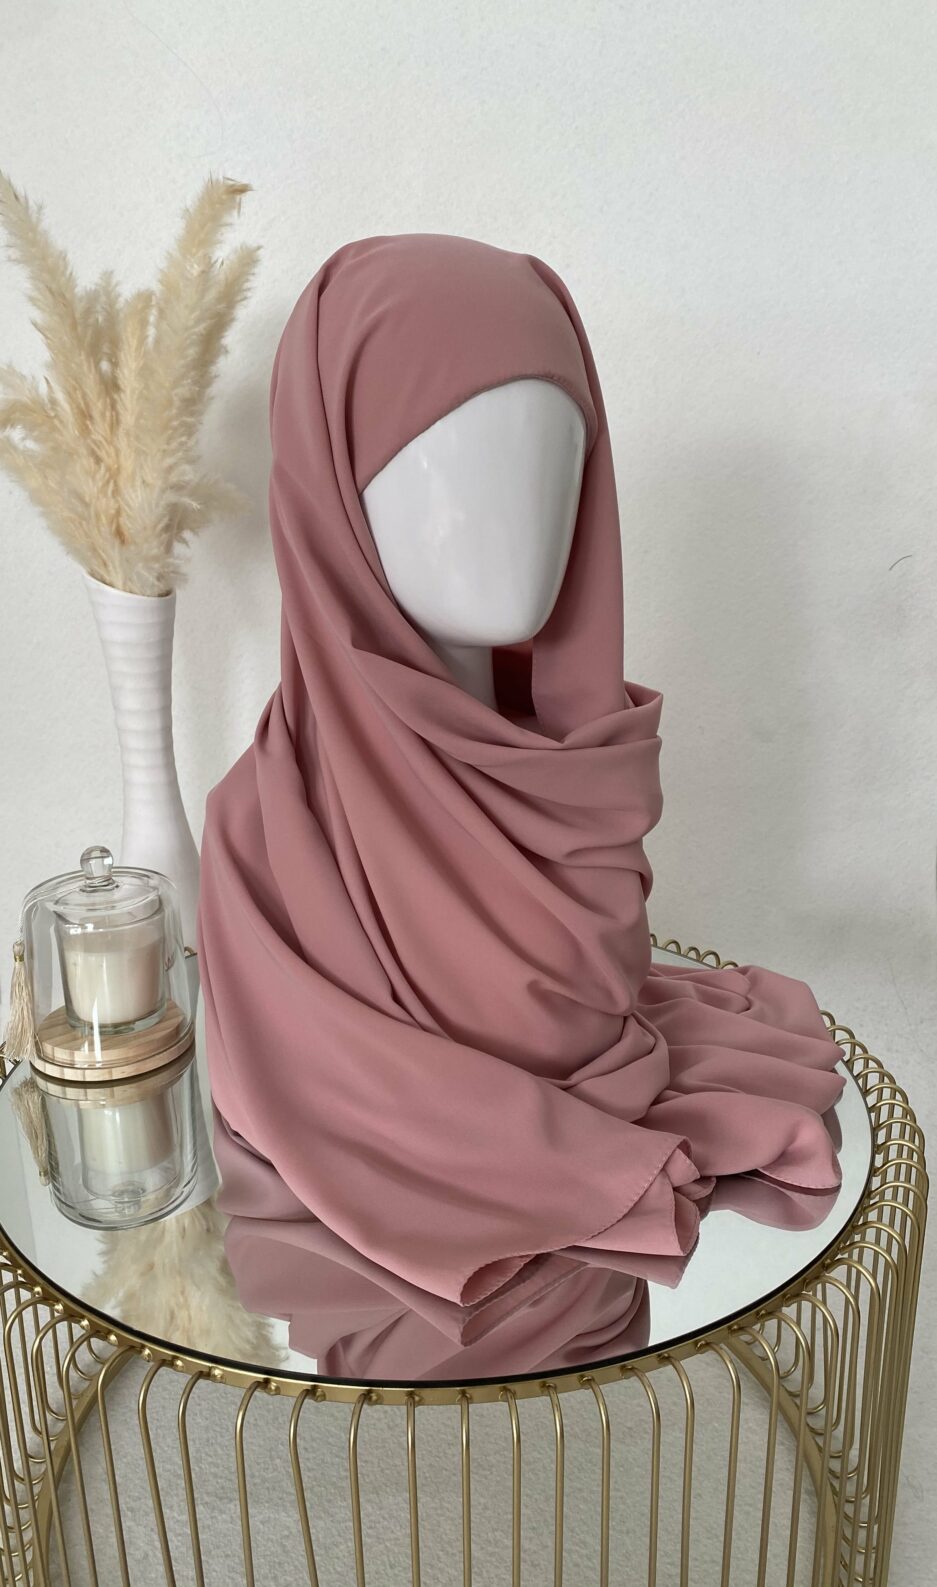 Vente en ligne hijab rose à enfiler avec bonnet, en gros et au détail voile soie de médine de bonne qualité 100% opaque, long, livraison rapide en 24H Nouveau hijab en soie de médine à enfilé avec bonnet intégrer, Cendrijab est situé dans le nord de la France